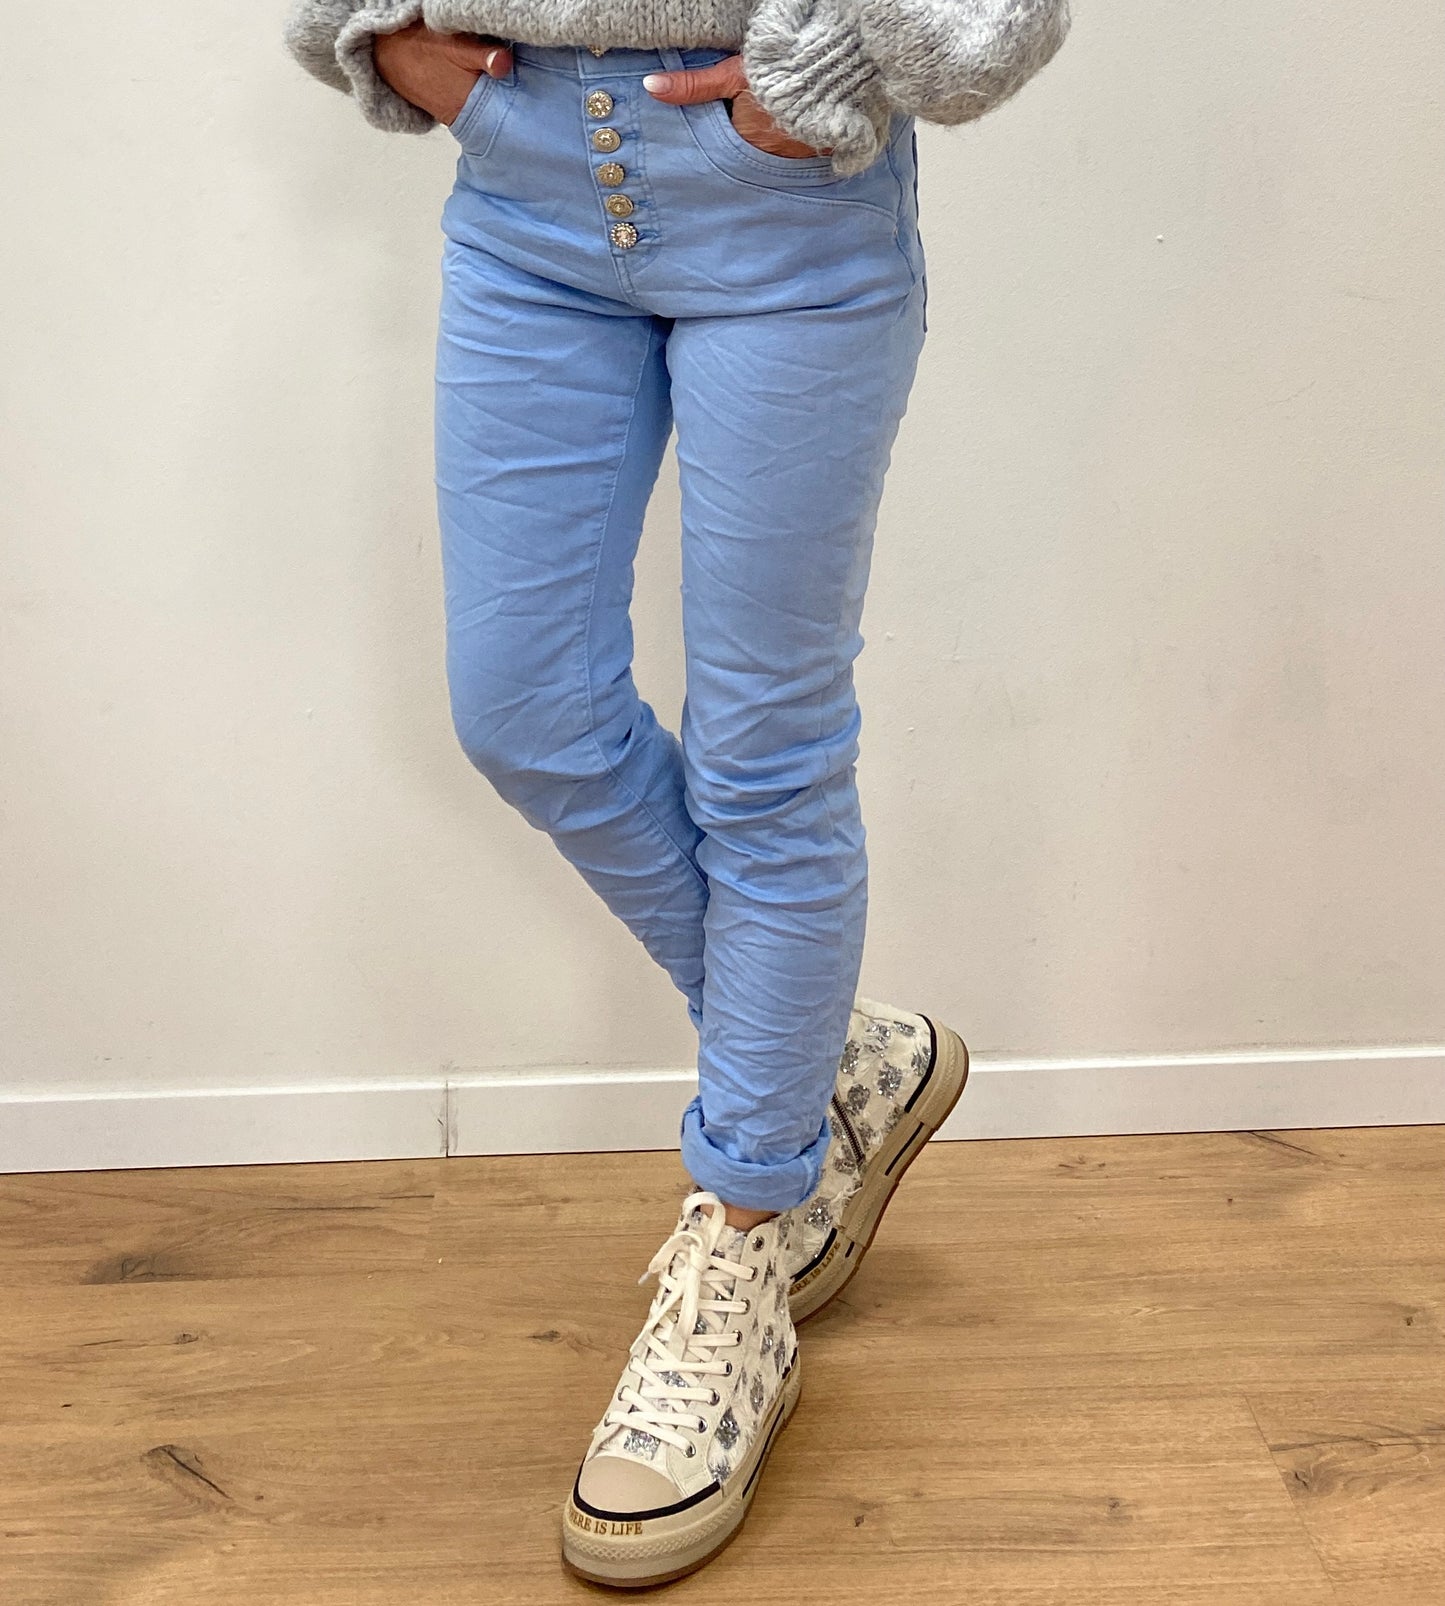 Jeans Hose Jewelly in blau mit Designer Knöpfen